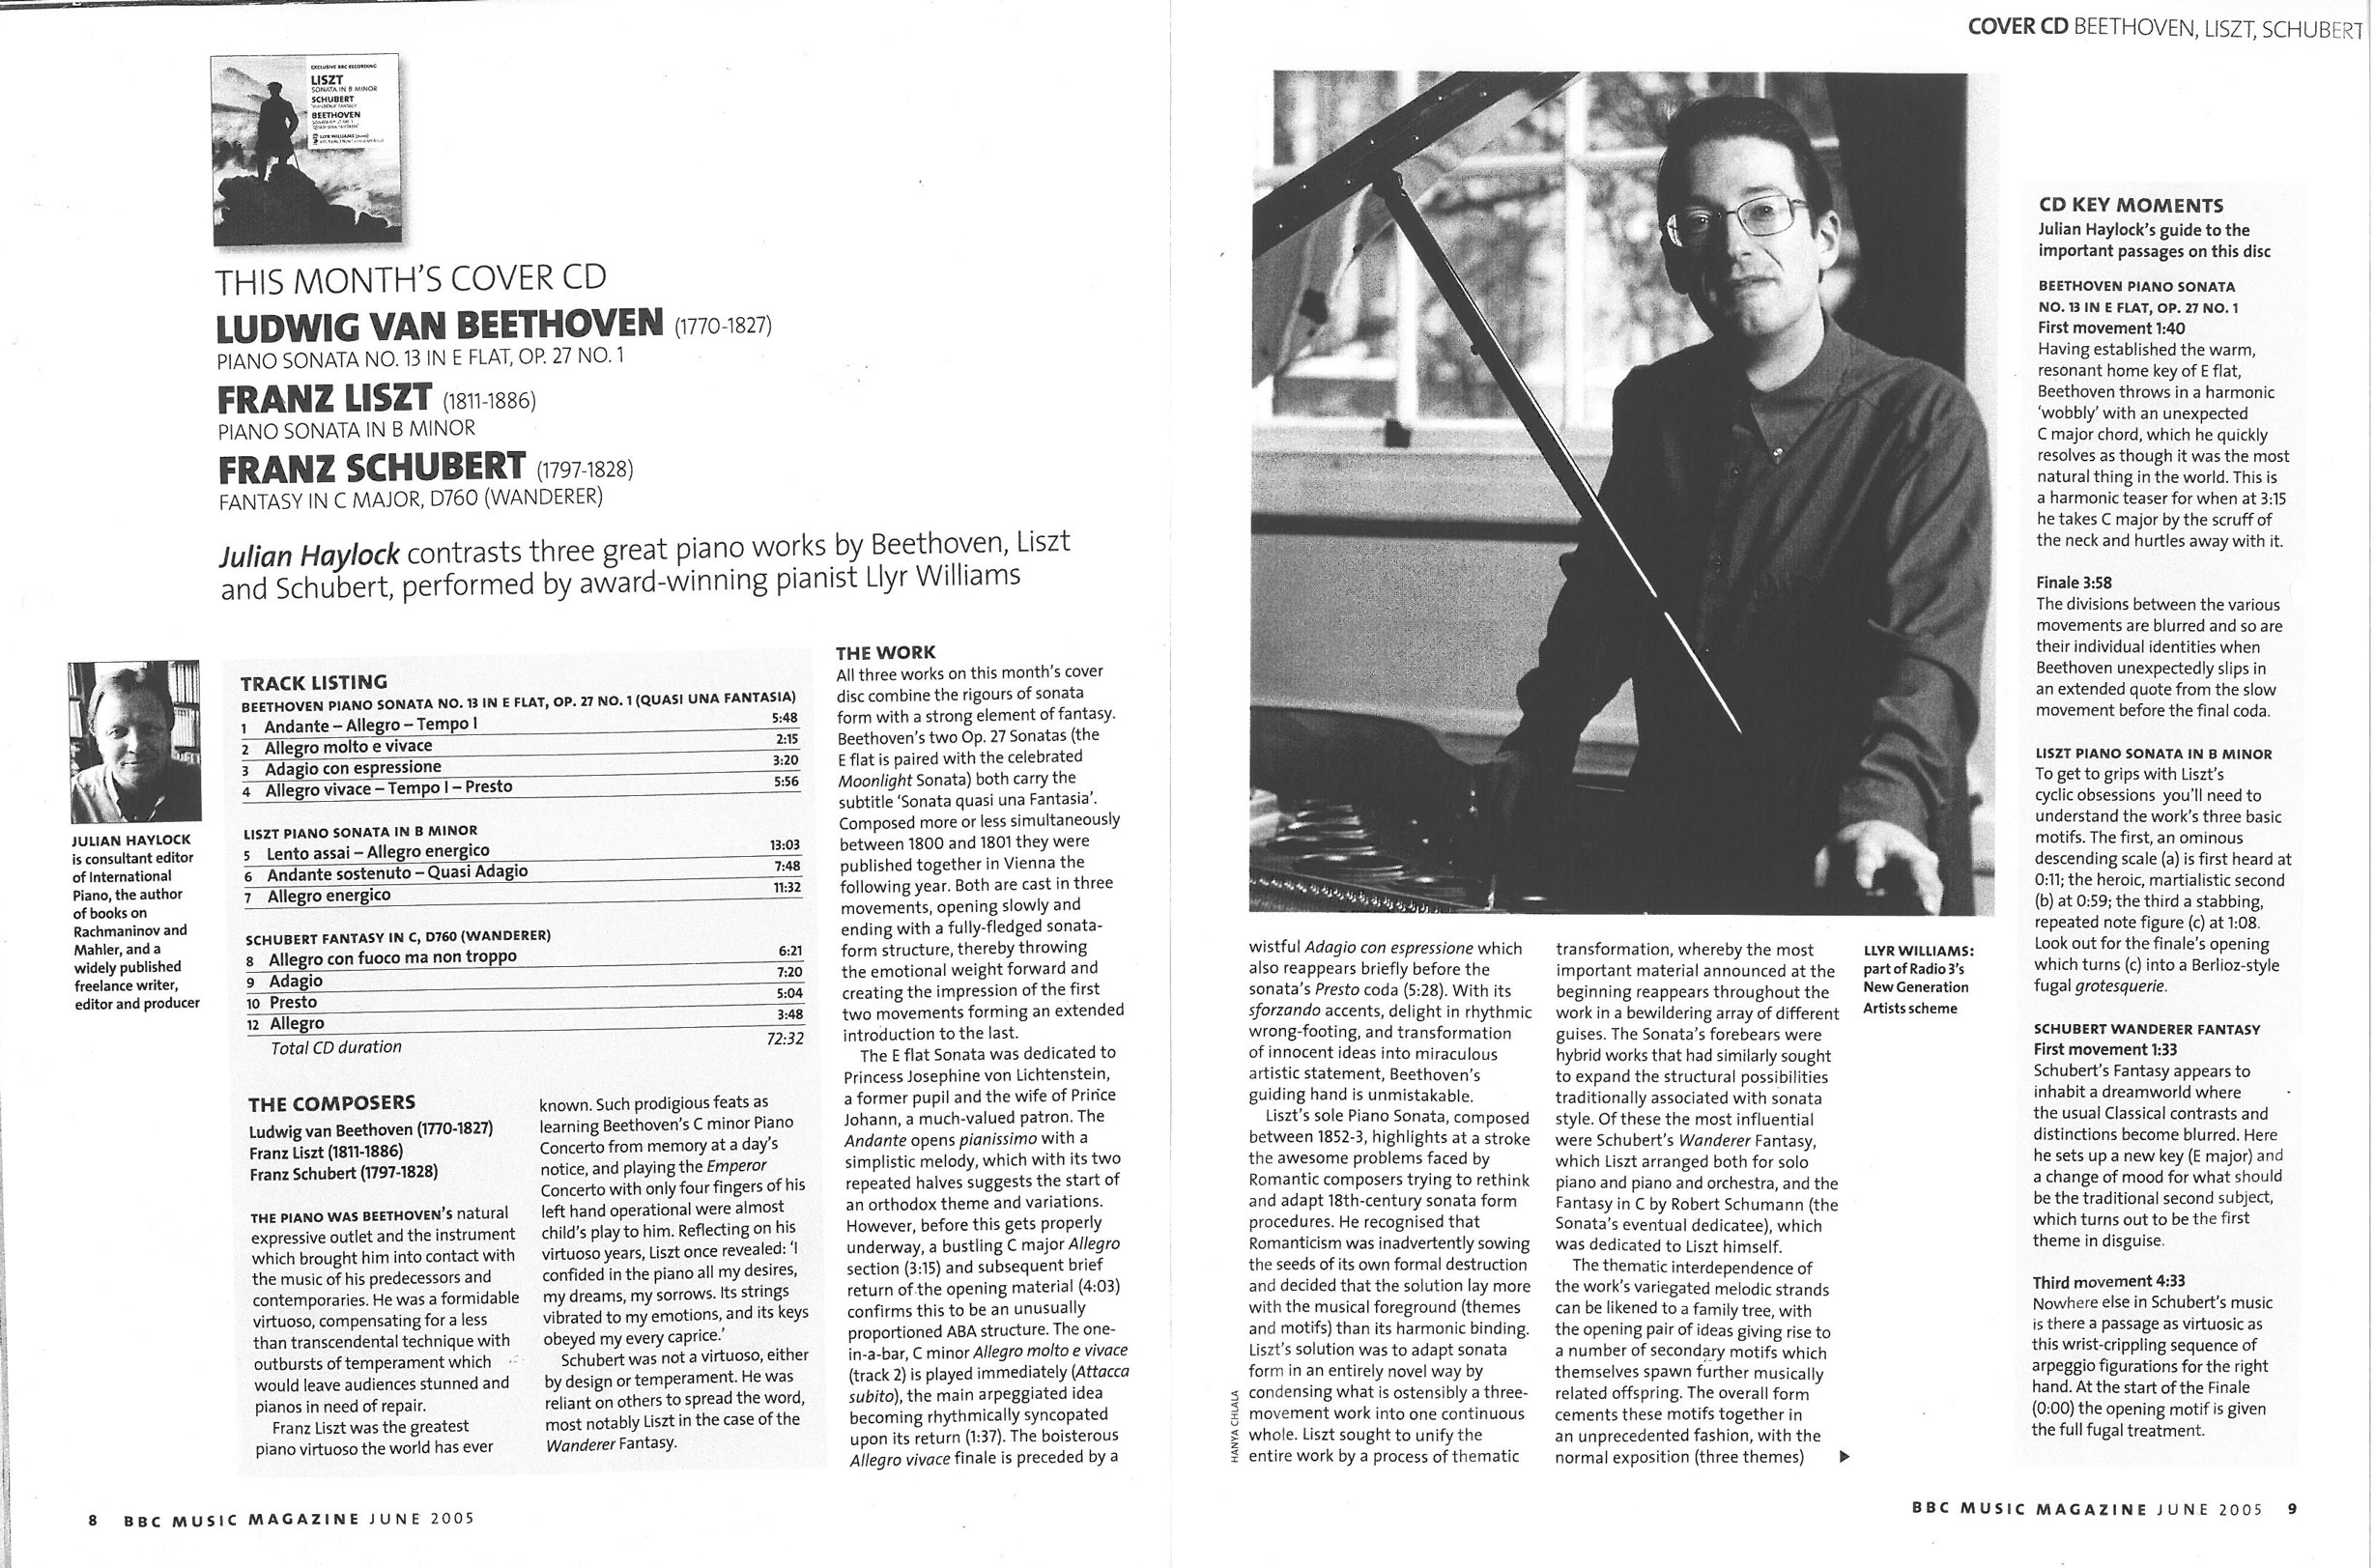 CD Review, 2005, BBC Music Magazine